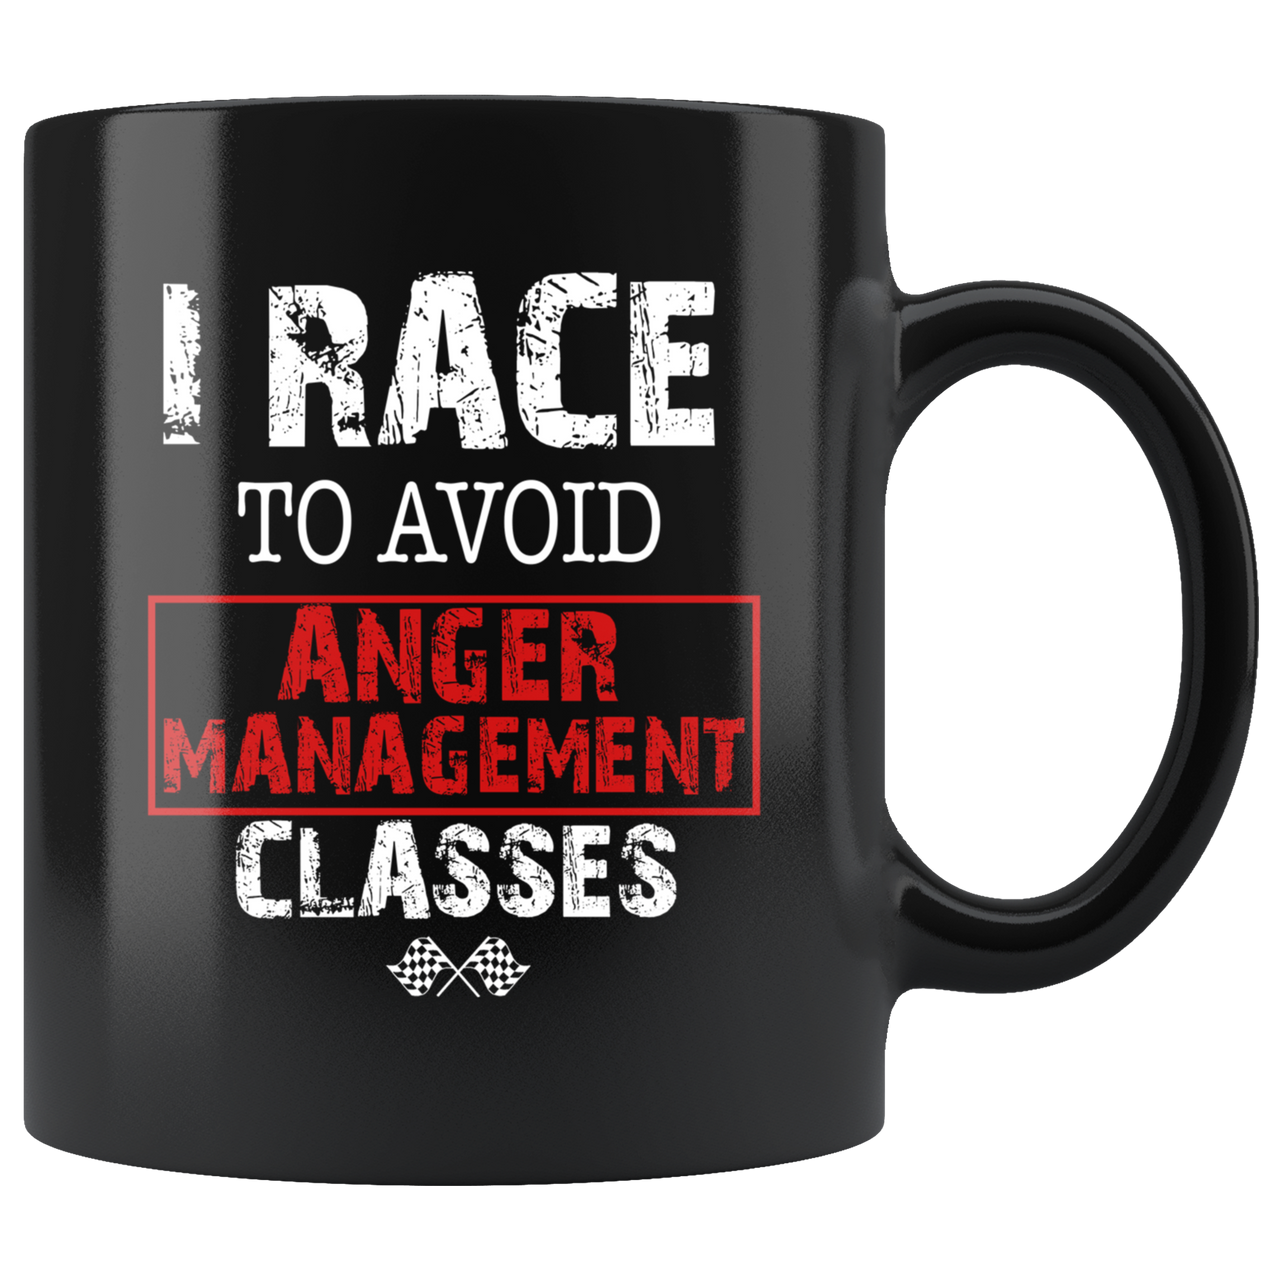 I Race To Avoid Anger Management Classes Mug!